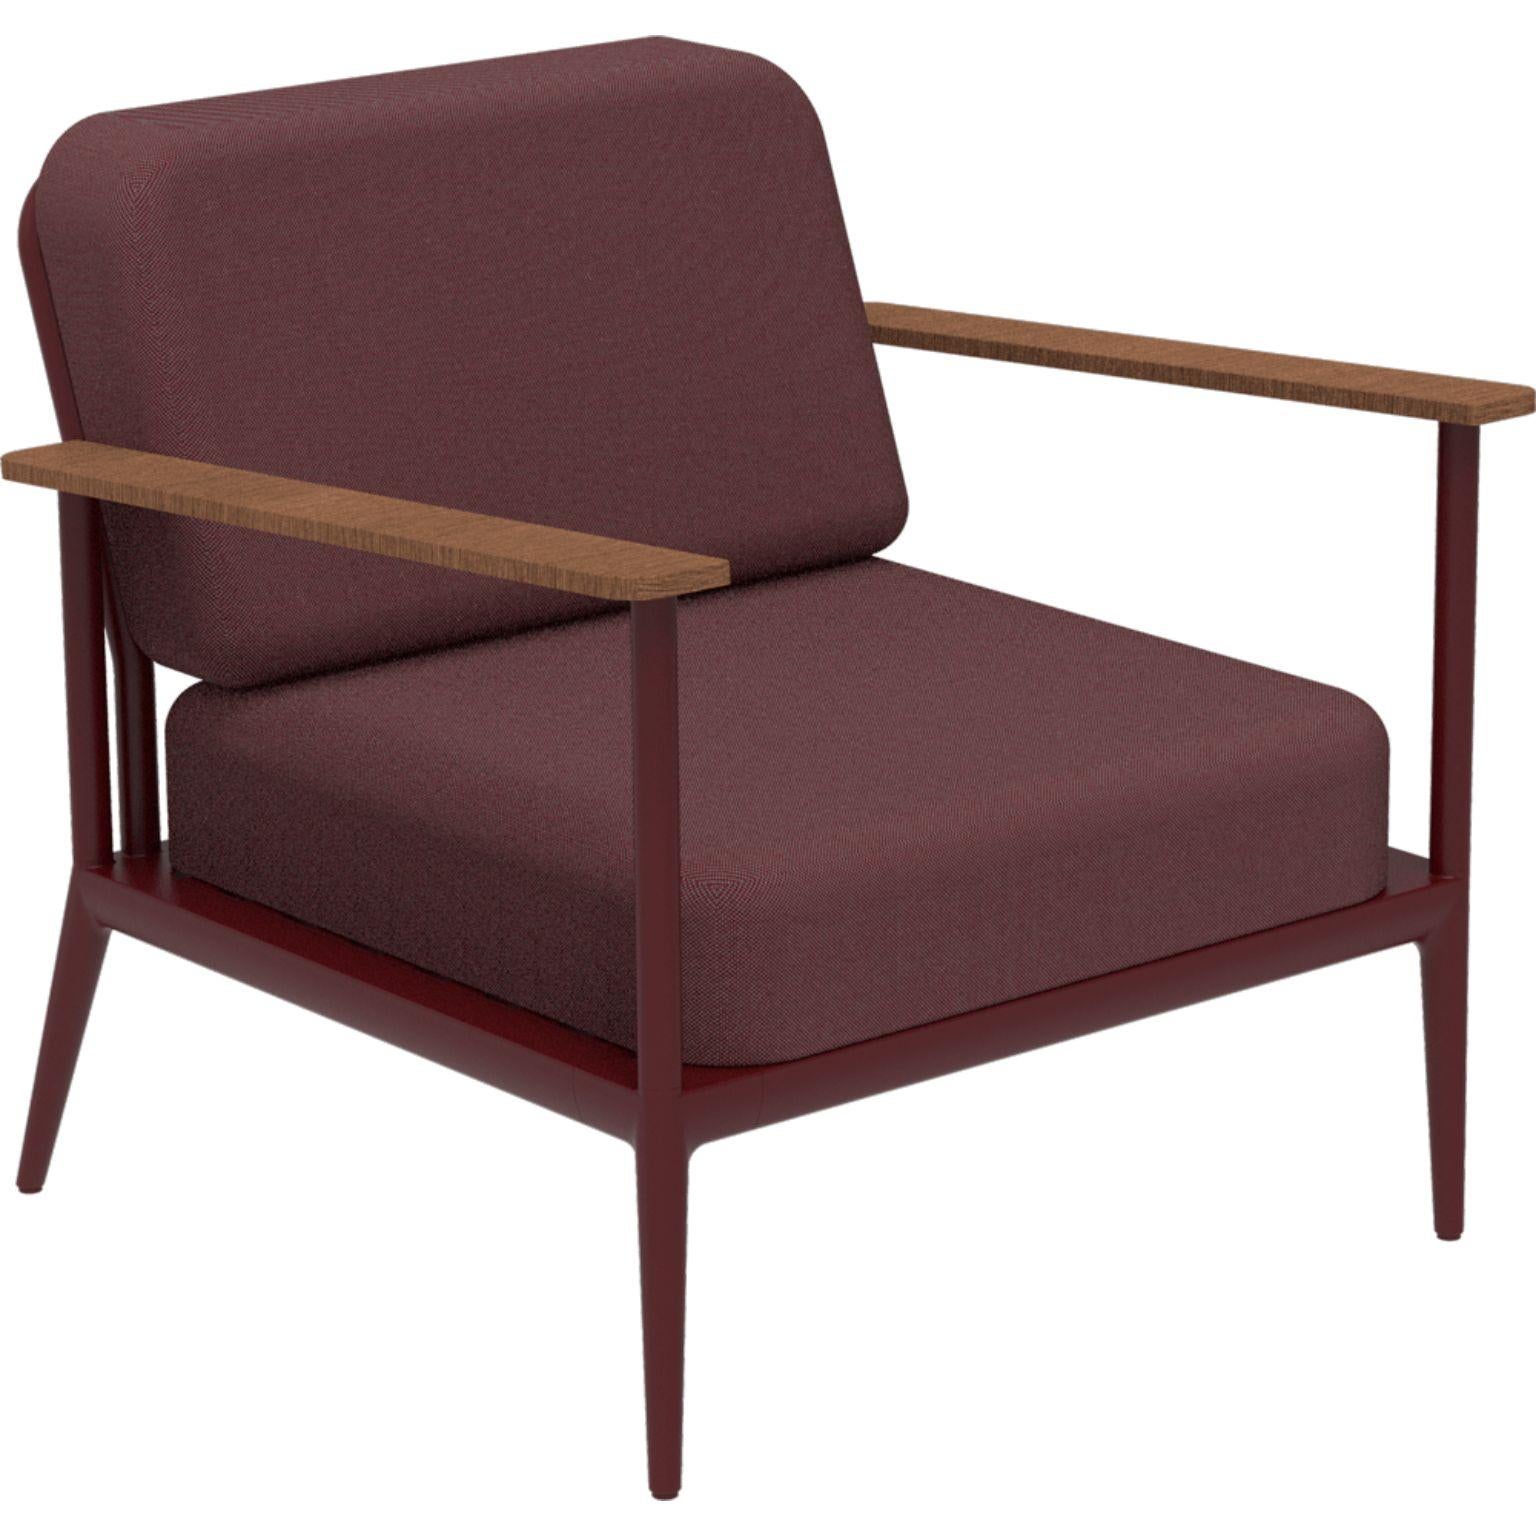 Nature Burgunderfarbener Longue-Stuhl von MOWEE
Abmessungen: T85 x B83 x H81 cm (Sitzhöhe 42 cm).
MATERIAL: Aluminium, Polsterung und Iroko-Holz.
Gewicht: 20 kg.
Auch in verschiedenen Farben und Ausführungen erhältlich.

Eine Collection'S, die